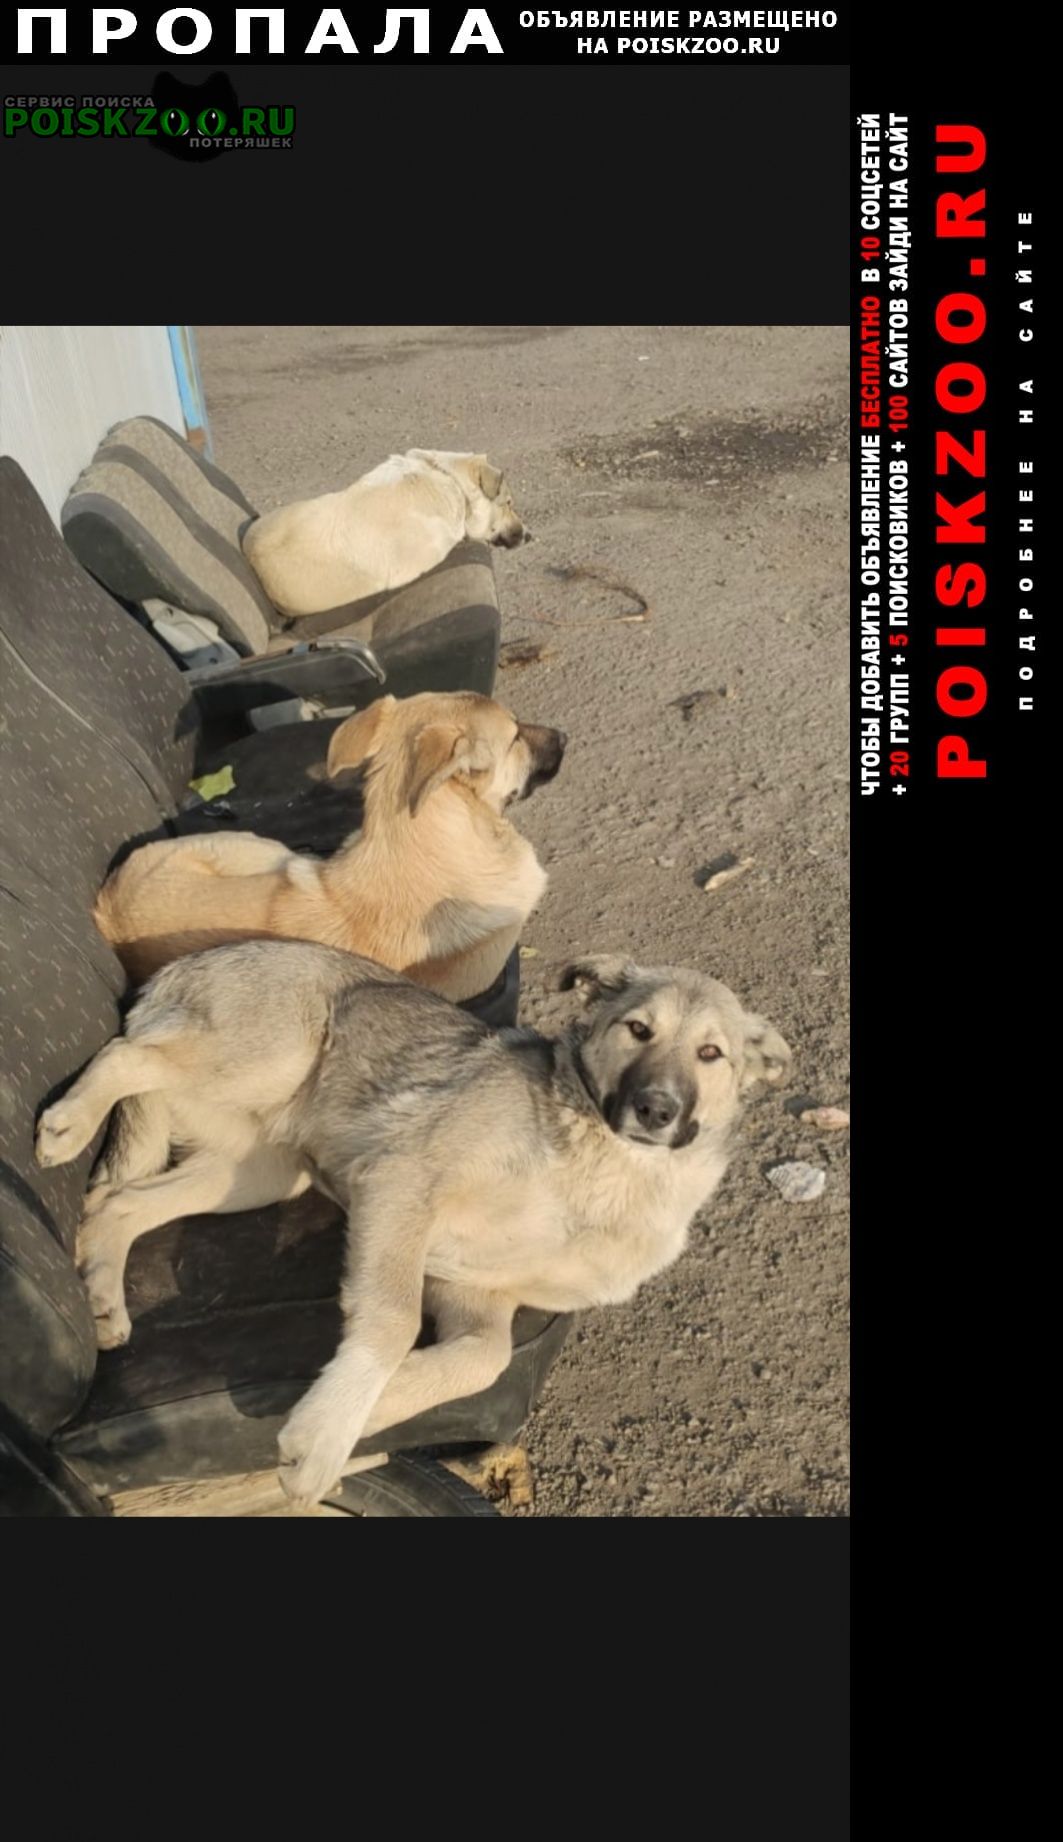 Пропала собака потерялись 3 собаки Москва